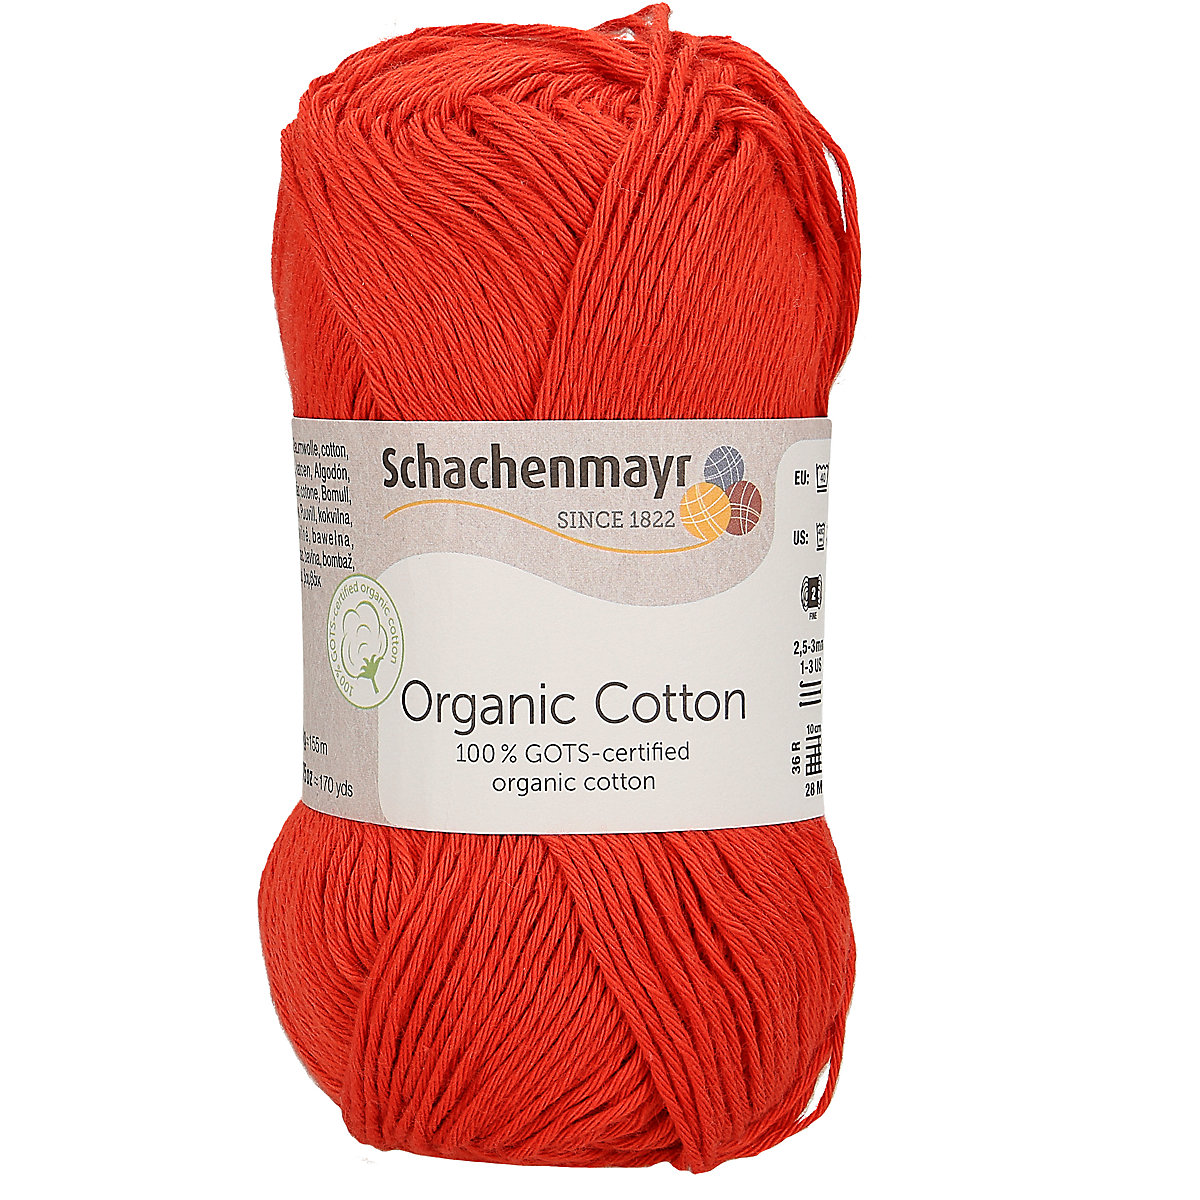 Schachenmayr Handstrickgarne Organic Cotton 50g Red